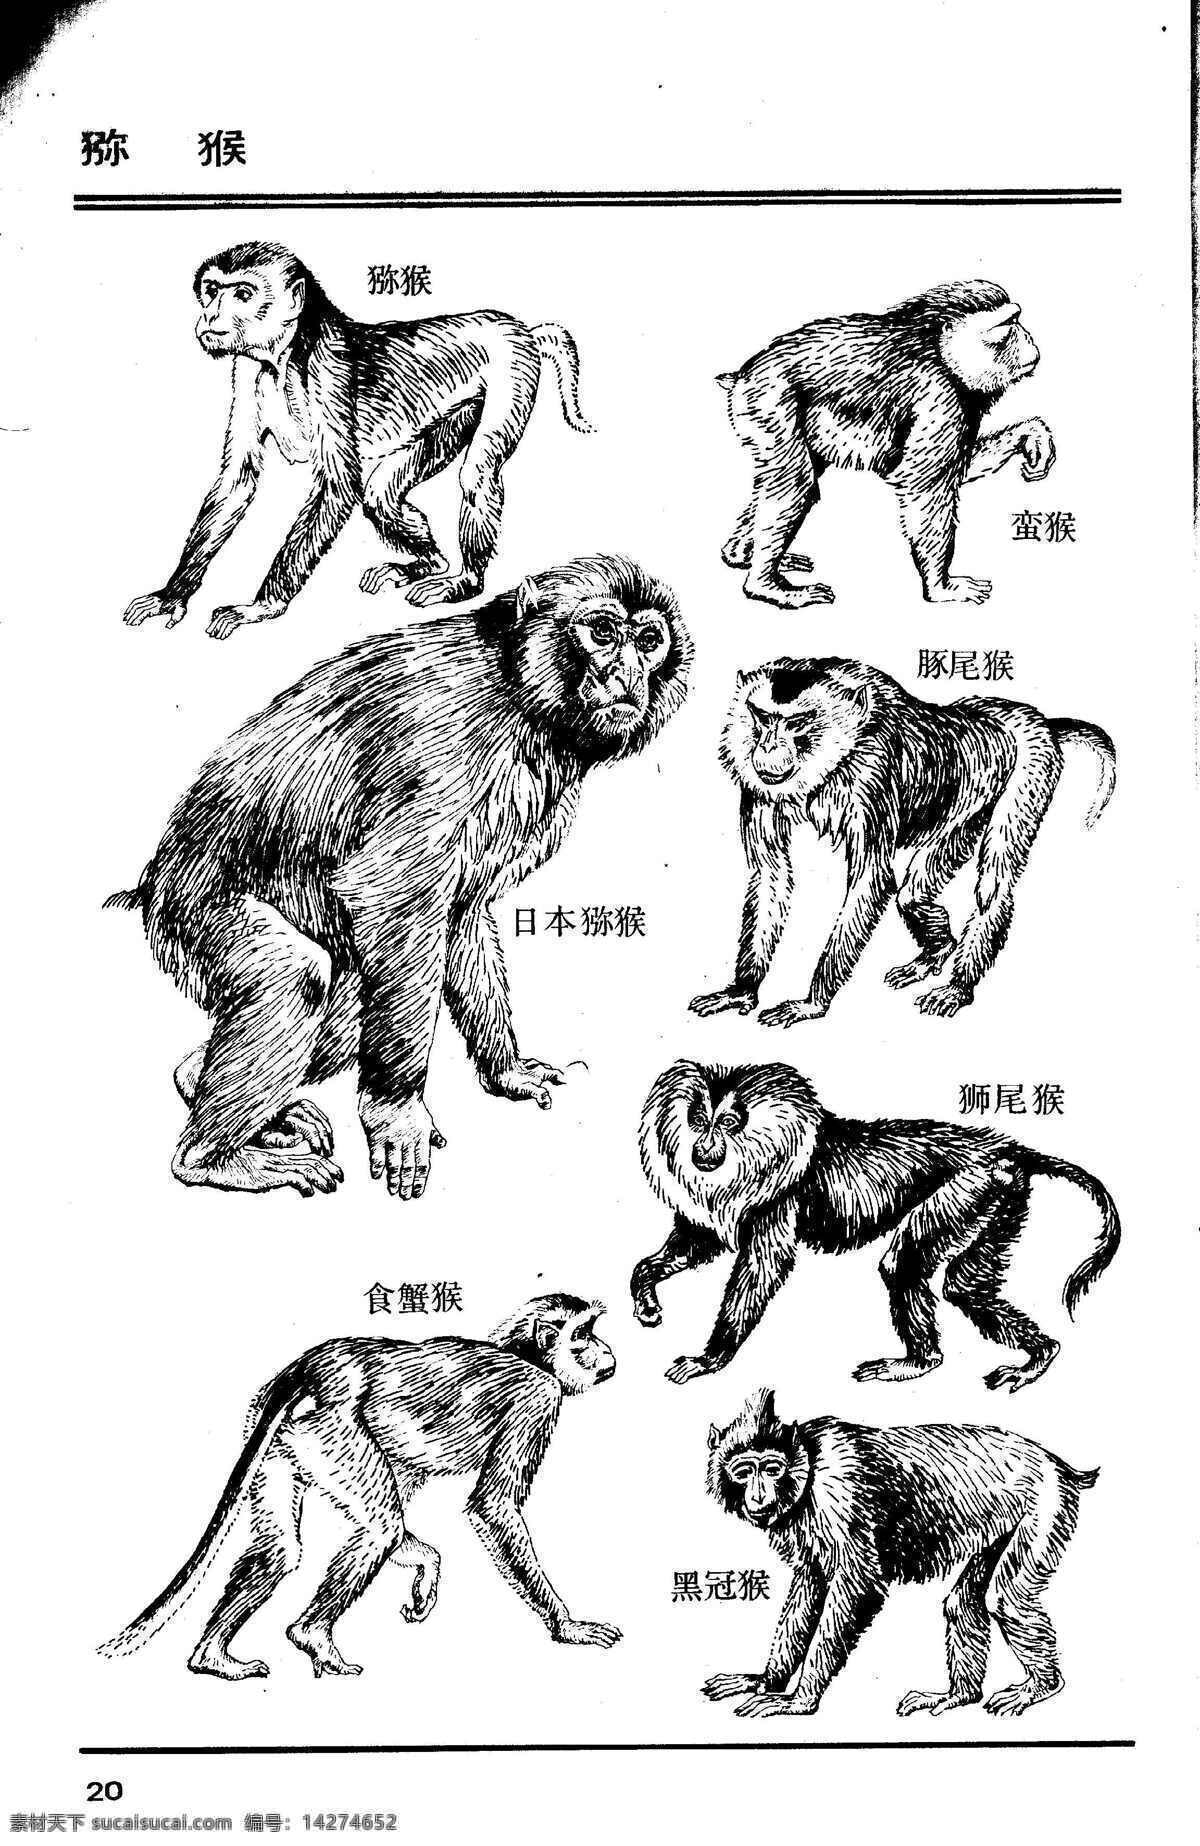 百兽图20 猕猴 百兽 兽 家禽 猛兽 动物 白描 线描 绘画 美术 禽兽 野生动物 画兽谱 猴 猴子 生物世界 设计图库